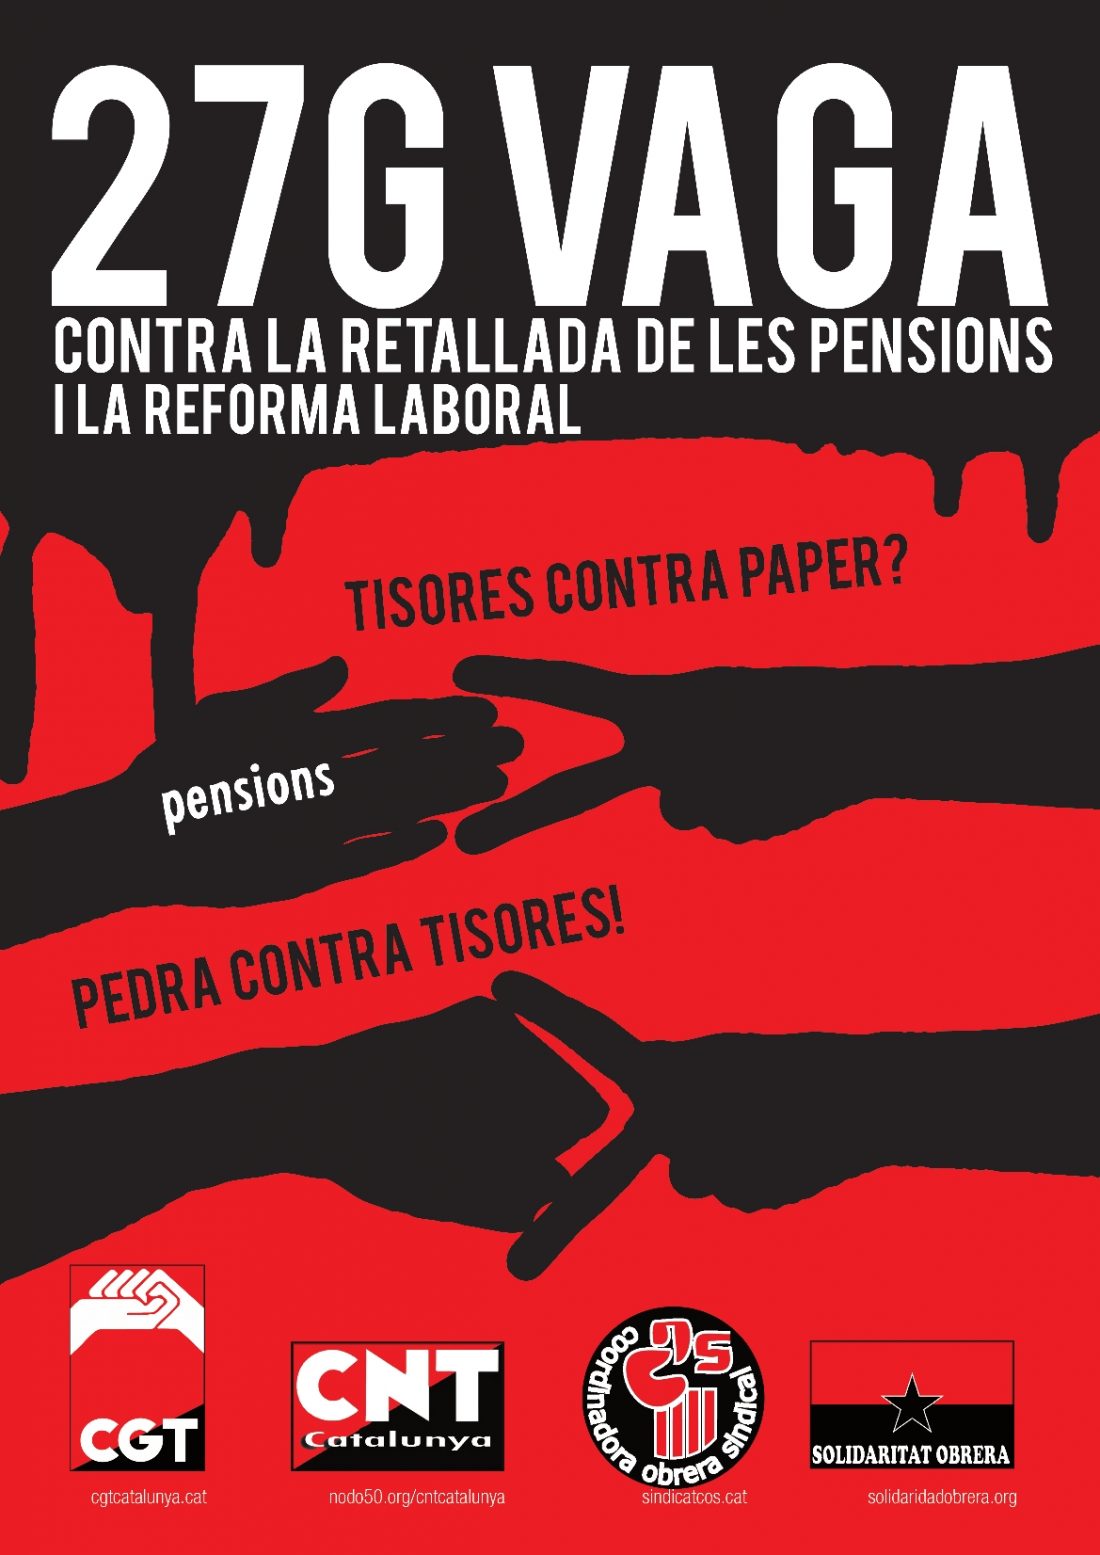 Catalunya : Convocatorias de CGT para la huelga general del 27E